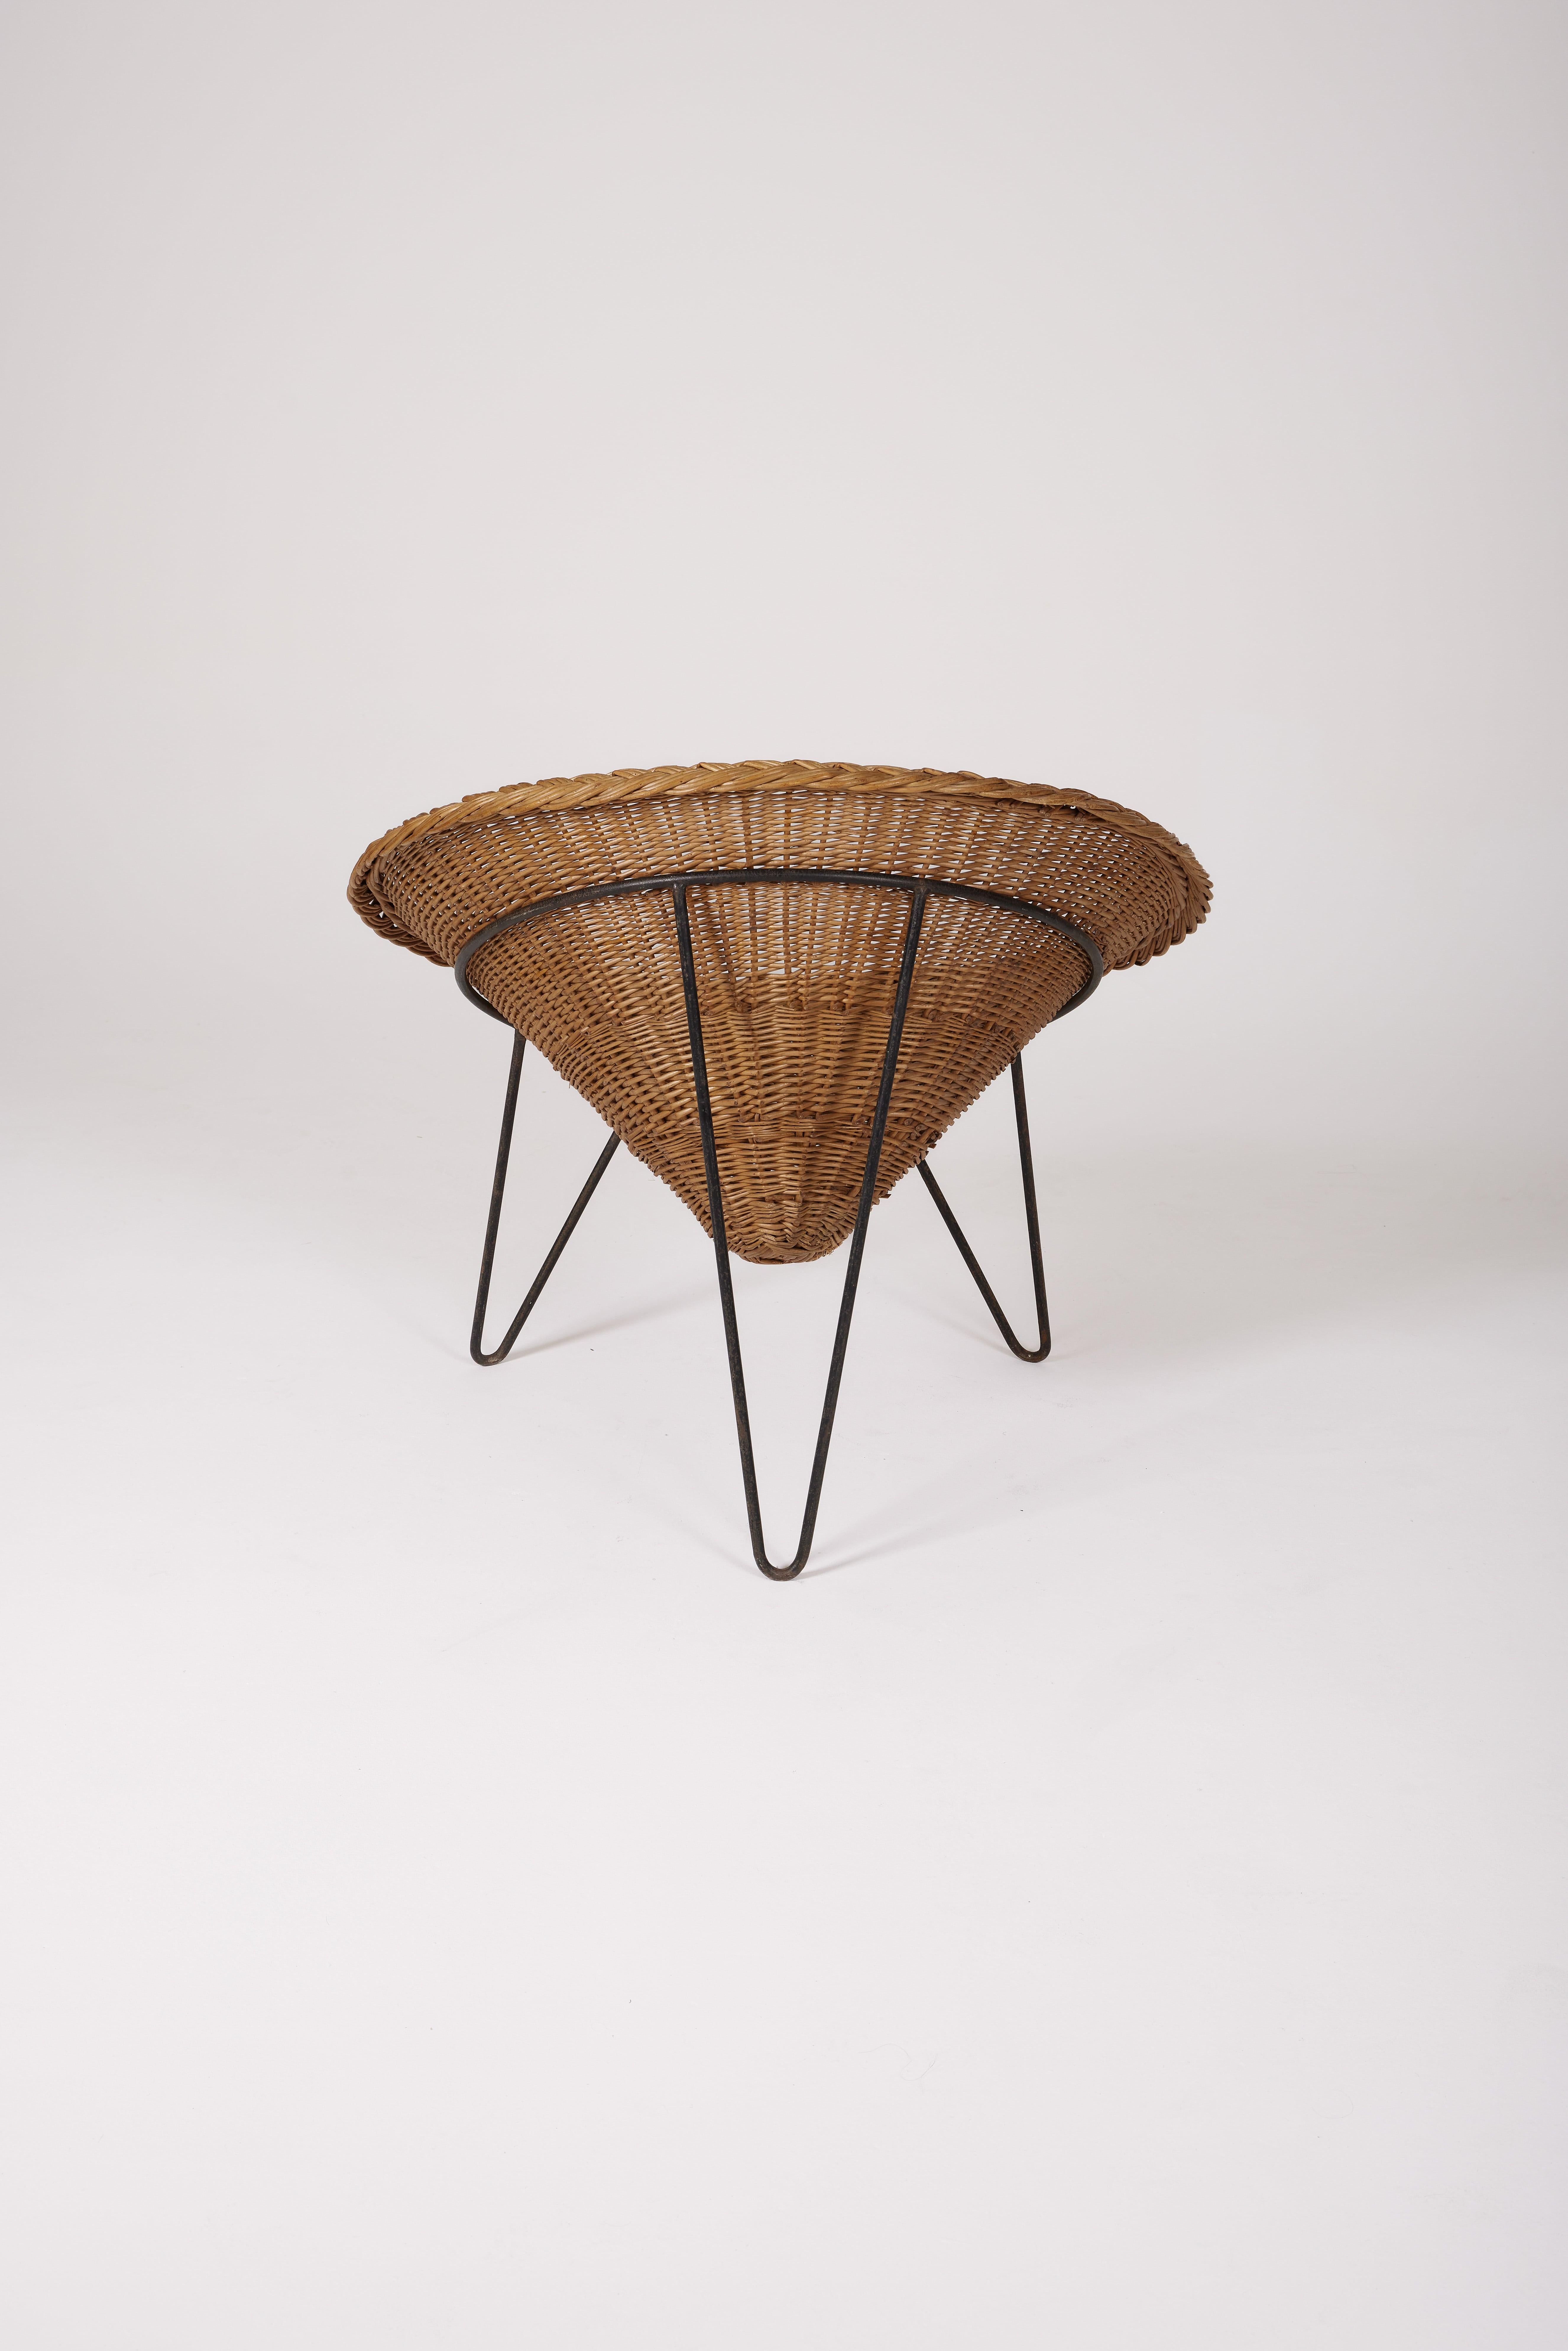 Rattan Wicker Basket Chair, 1970s